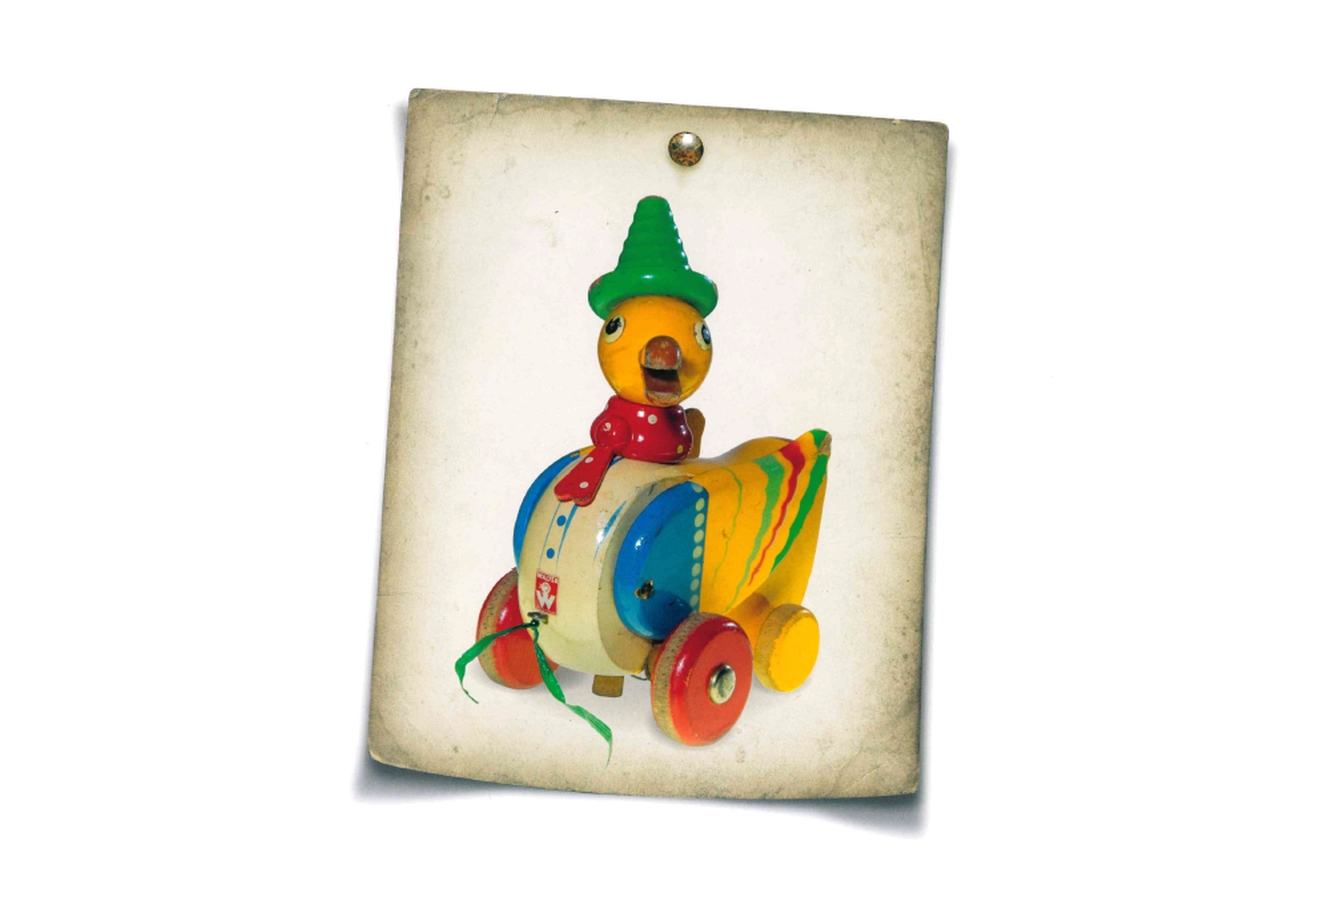 Die Abbildung zeigt ein auf einen weißen Hintergrund gepinntes Foto einer bunt bemalten Holzspielzeug-Ente mit Rädern.